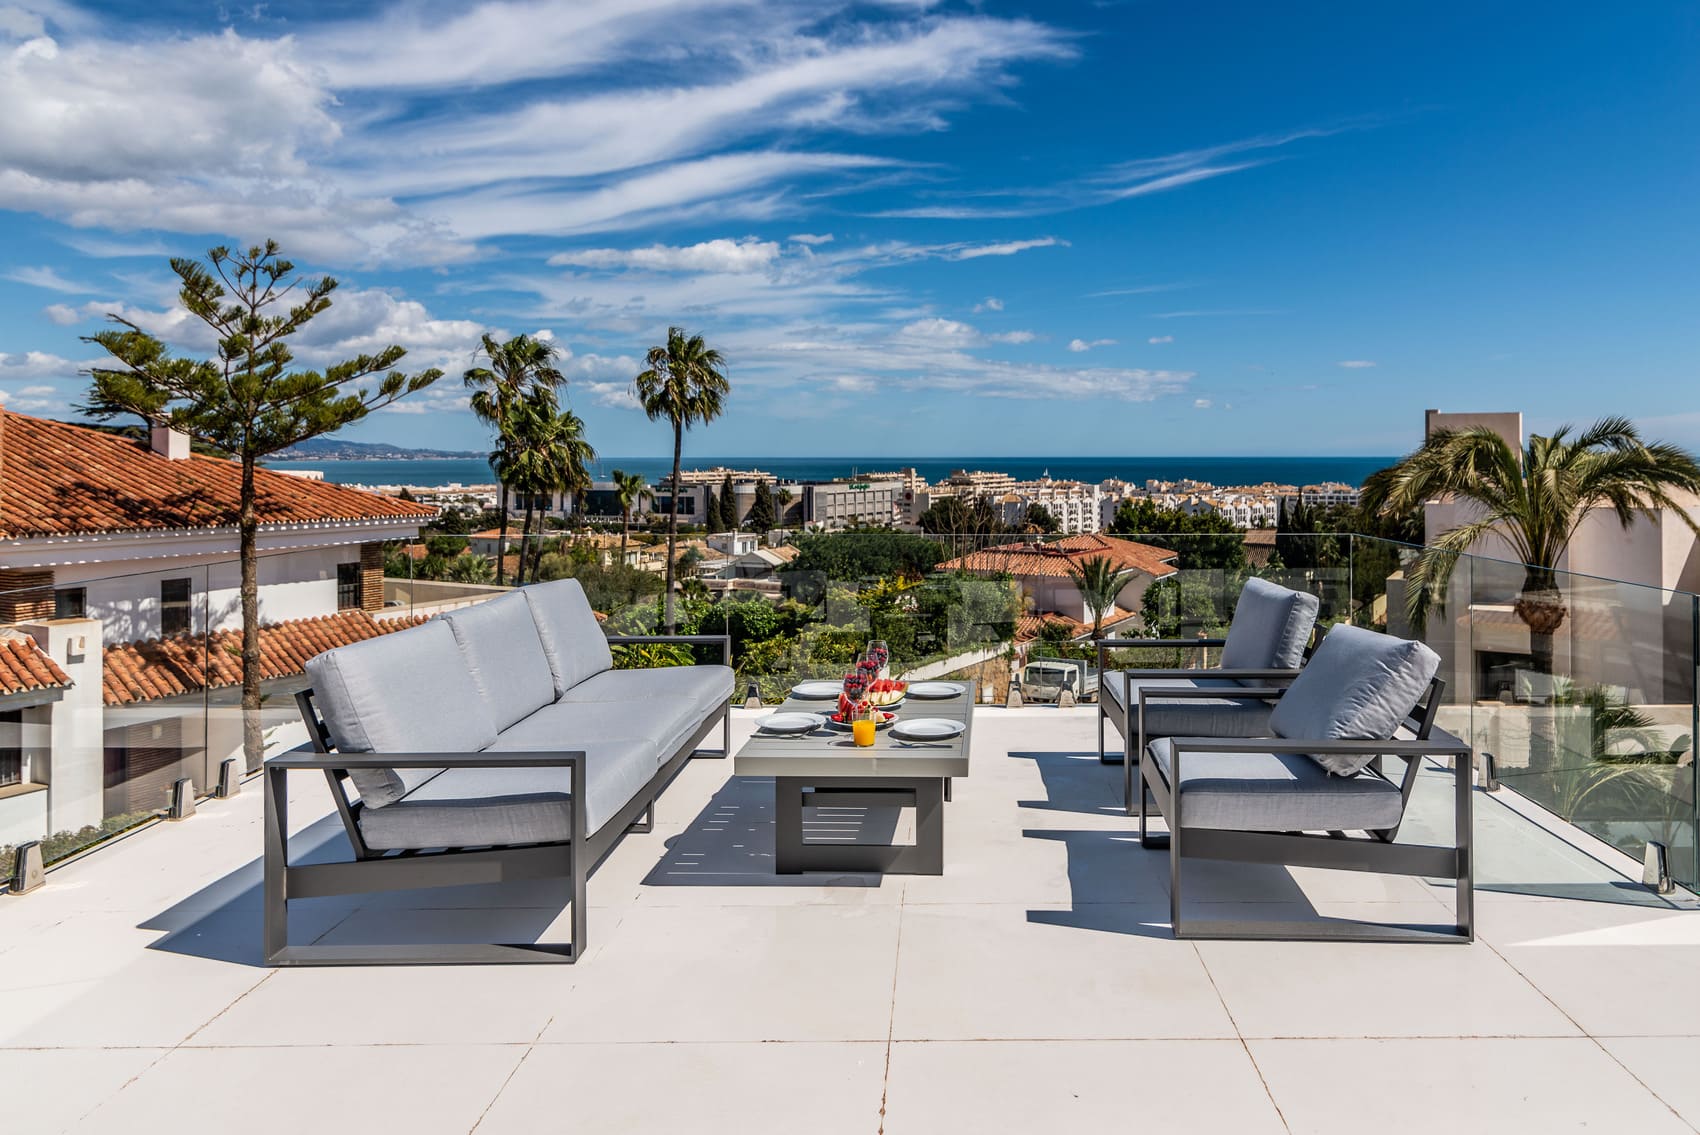 Marbella real estate